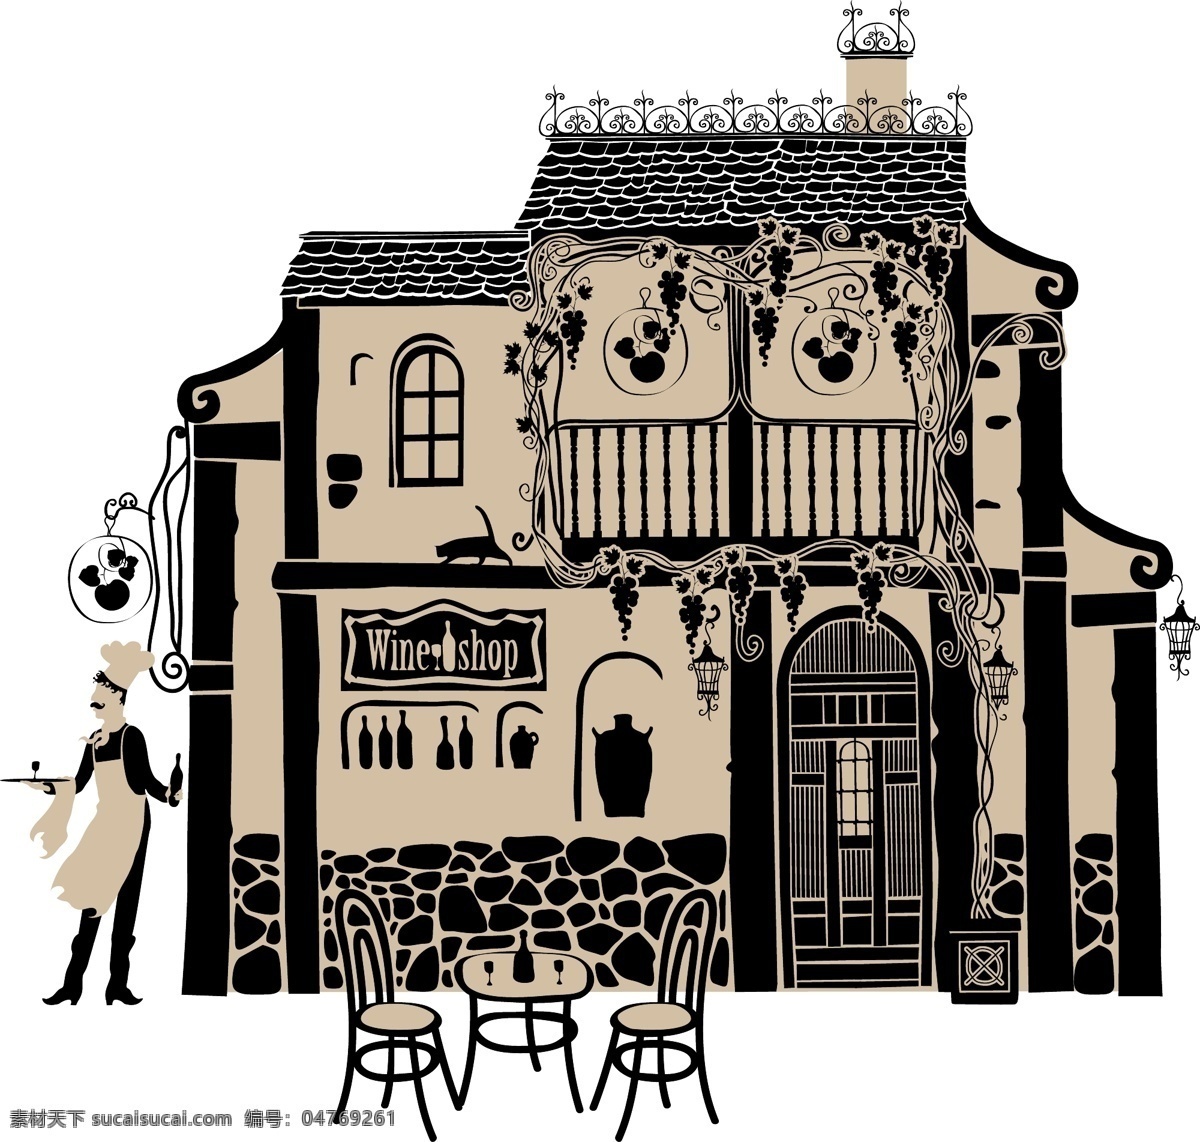 老房子插画 街道 咖啡馆 喝咖啡 女士 男士 线条画 插画 老房子 建筑景观 空间环境 矢量素材 白色